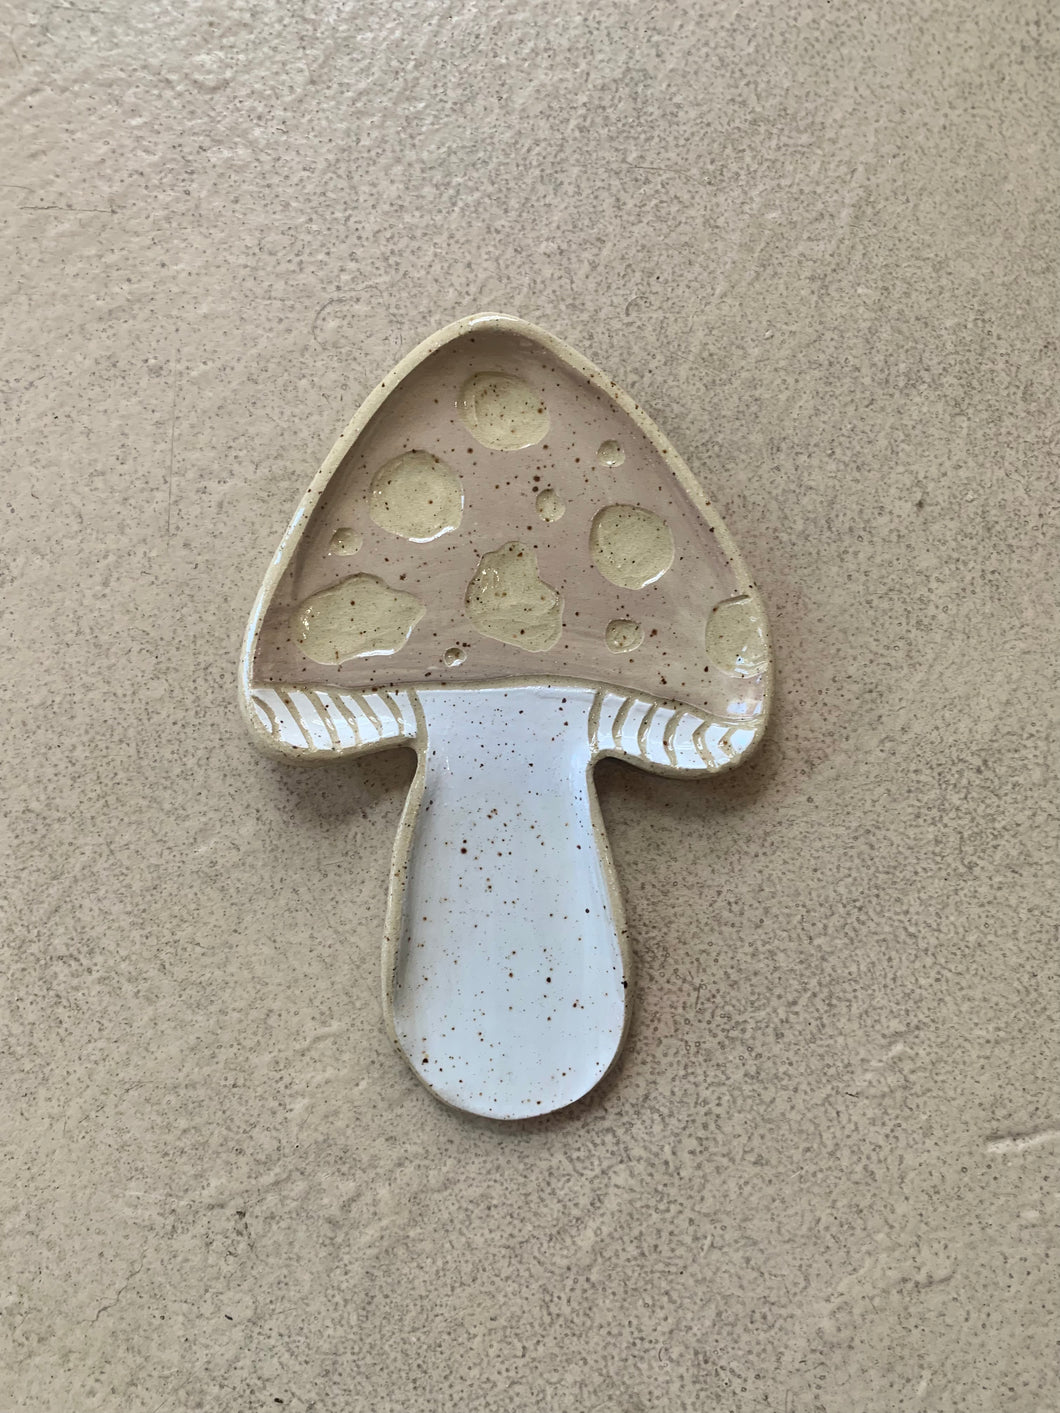 Large Mushroom Spoon Rest